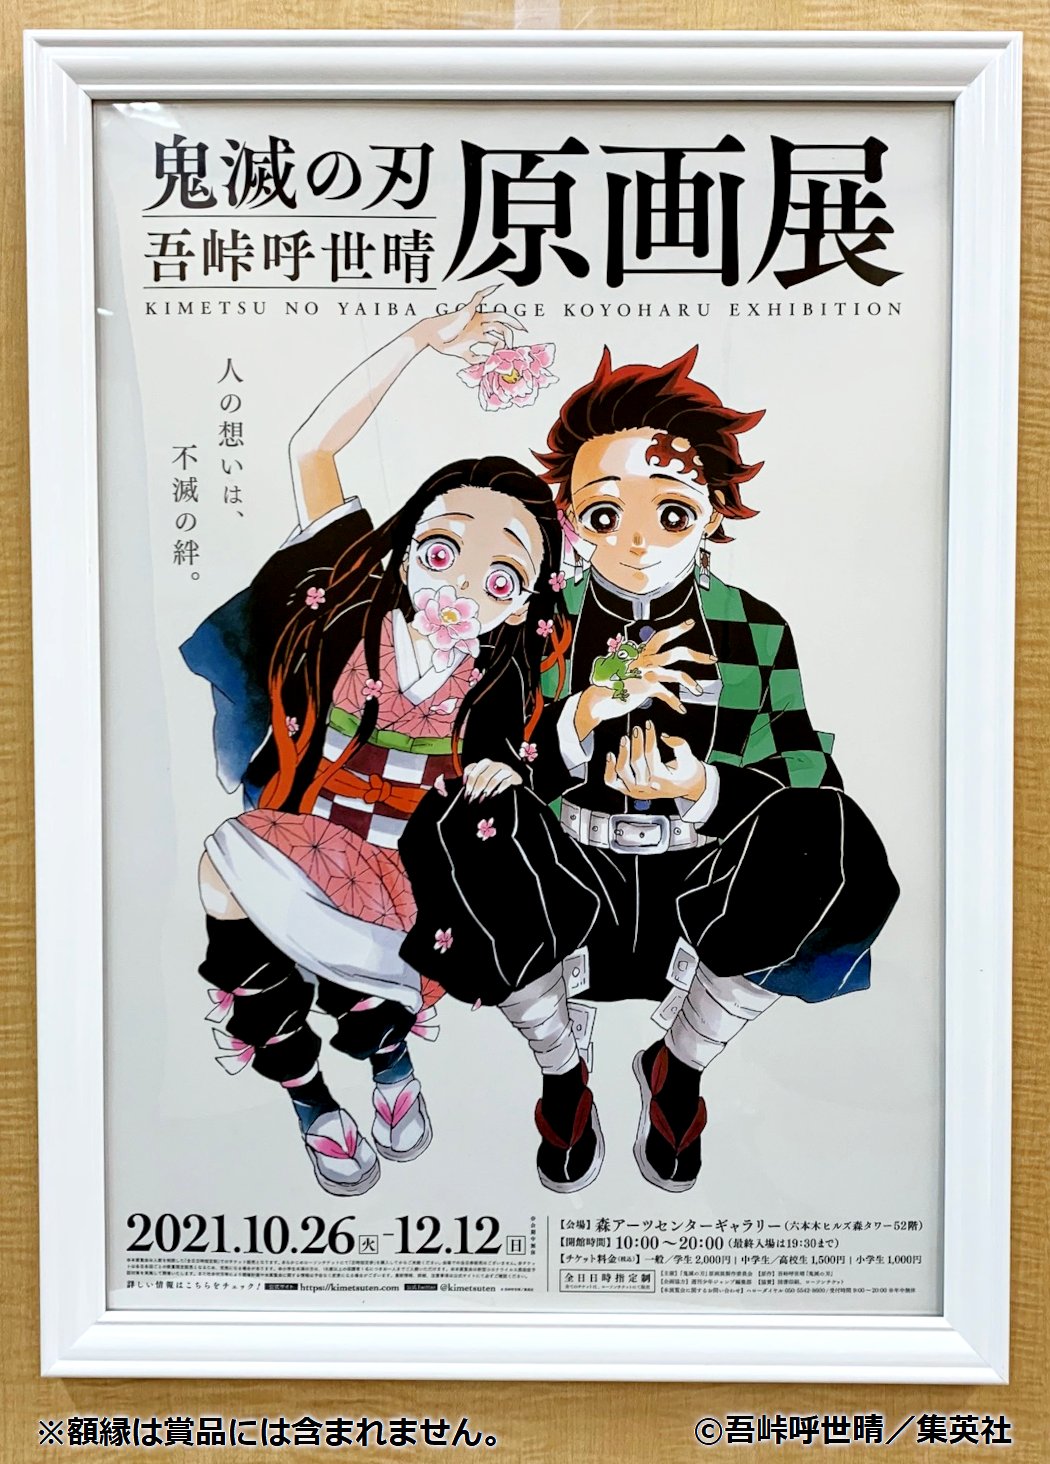 その他「魔法の手 ロッカクアヤコ作品展」展覧会オフィシャルポスター